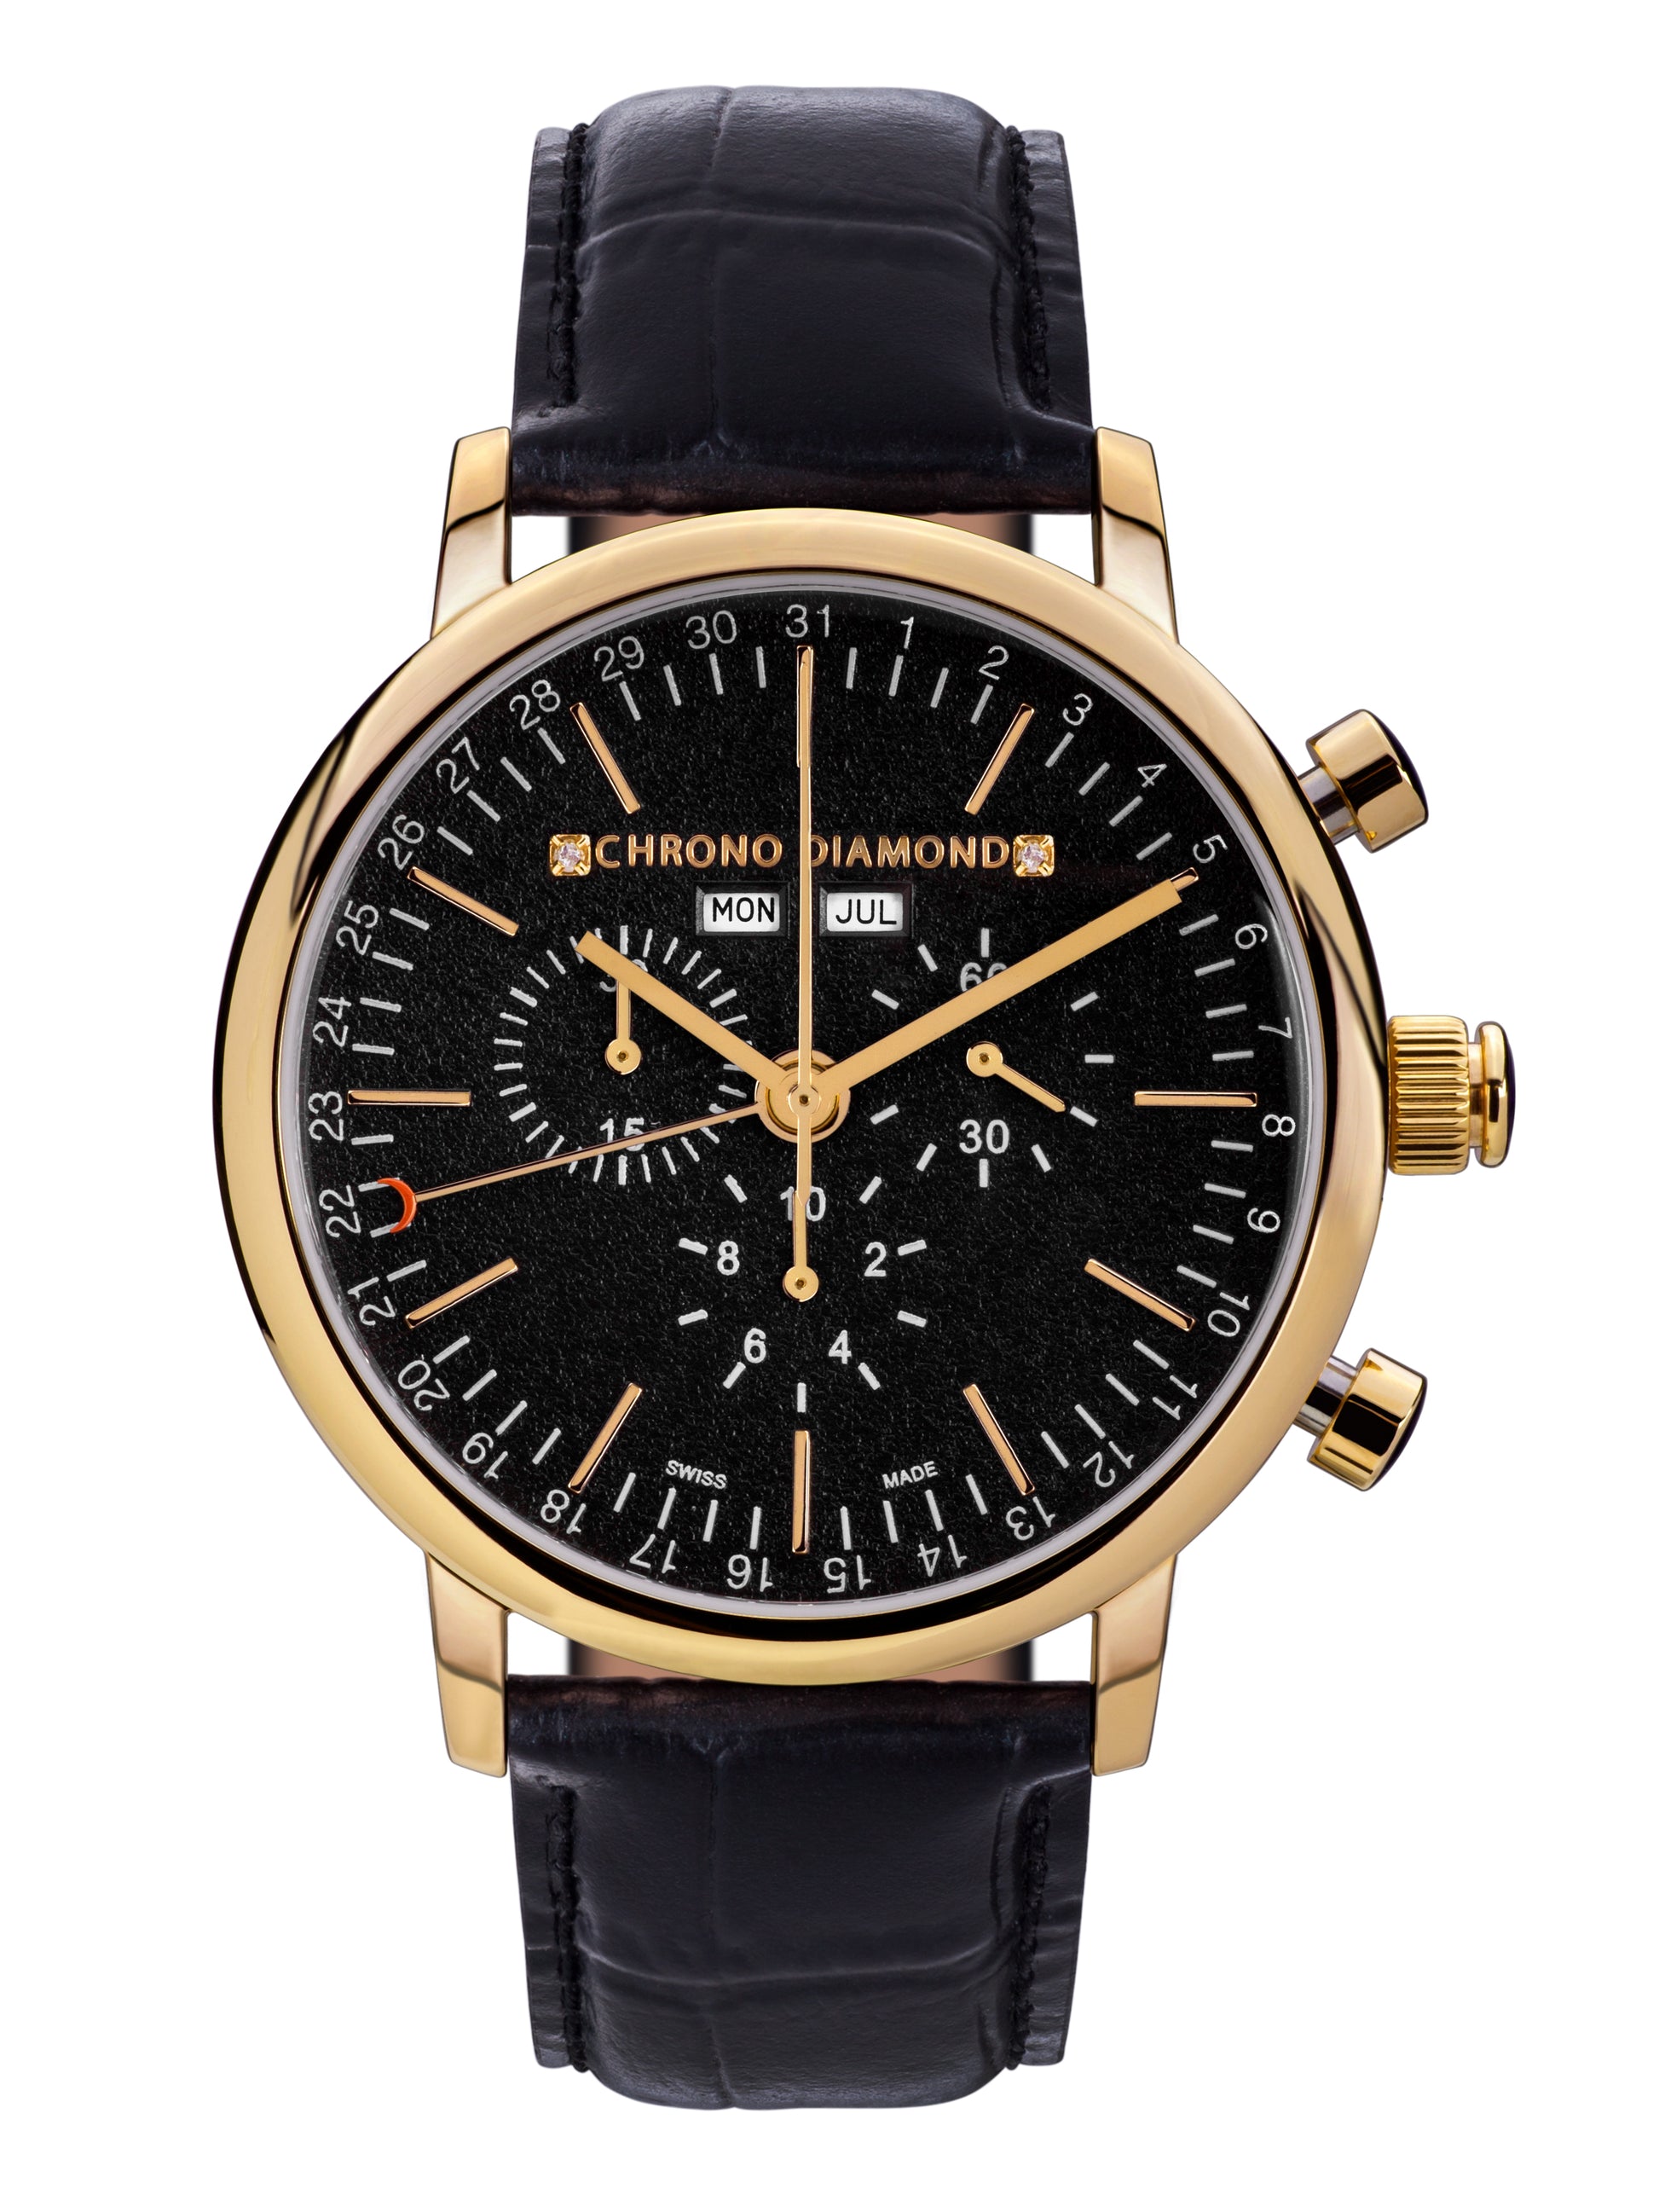 Automatic watches — Argos — Chrono Diamond — gold IP black